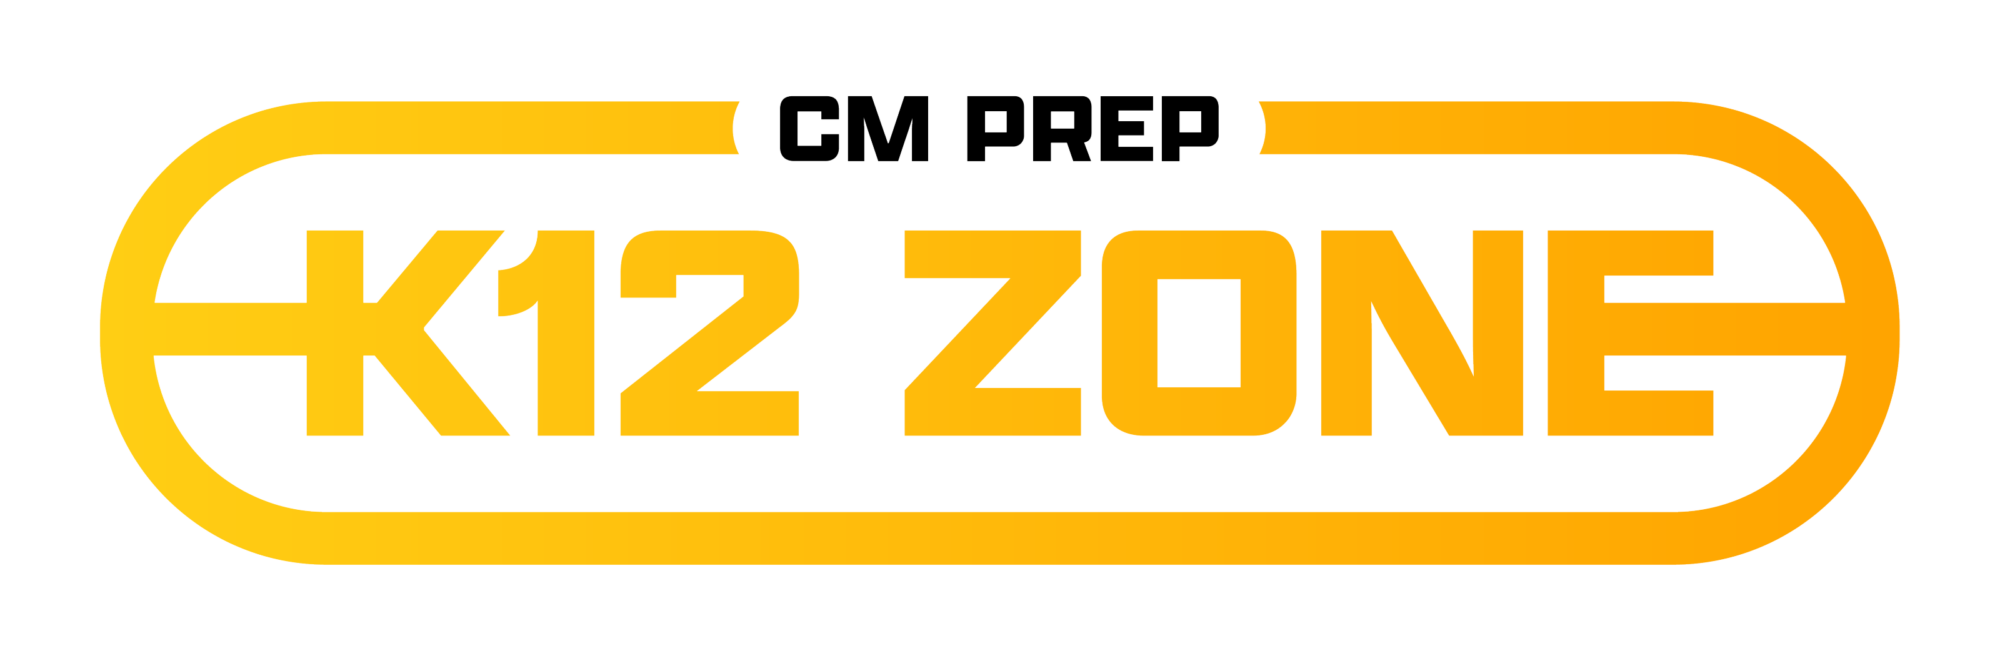 CM Prep K12 Zone logo